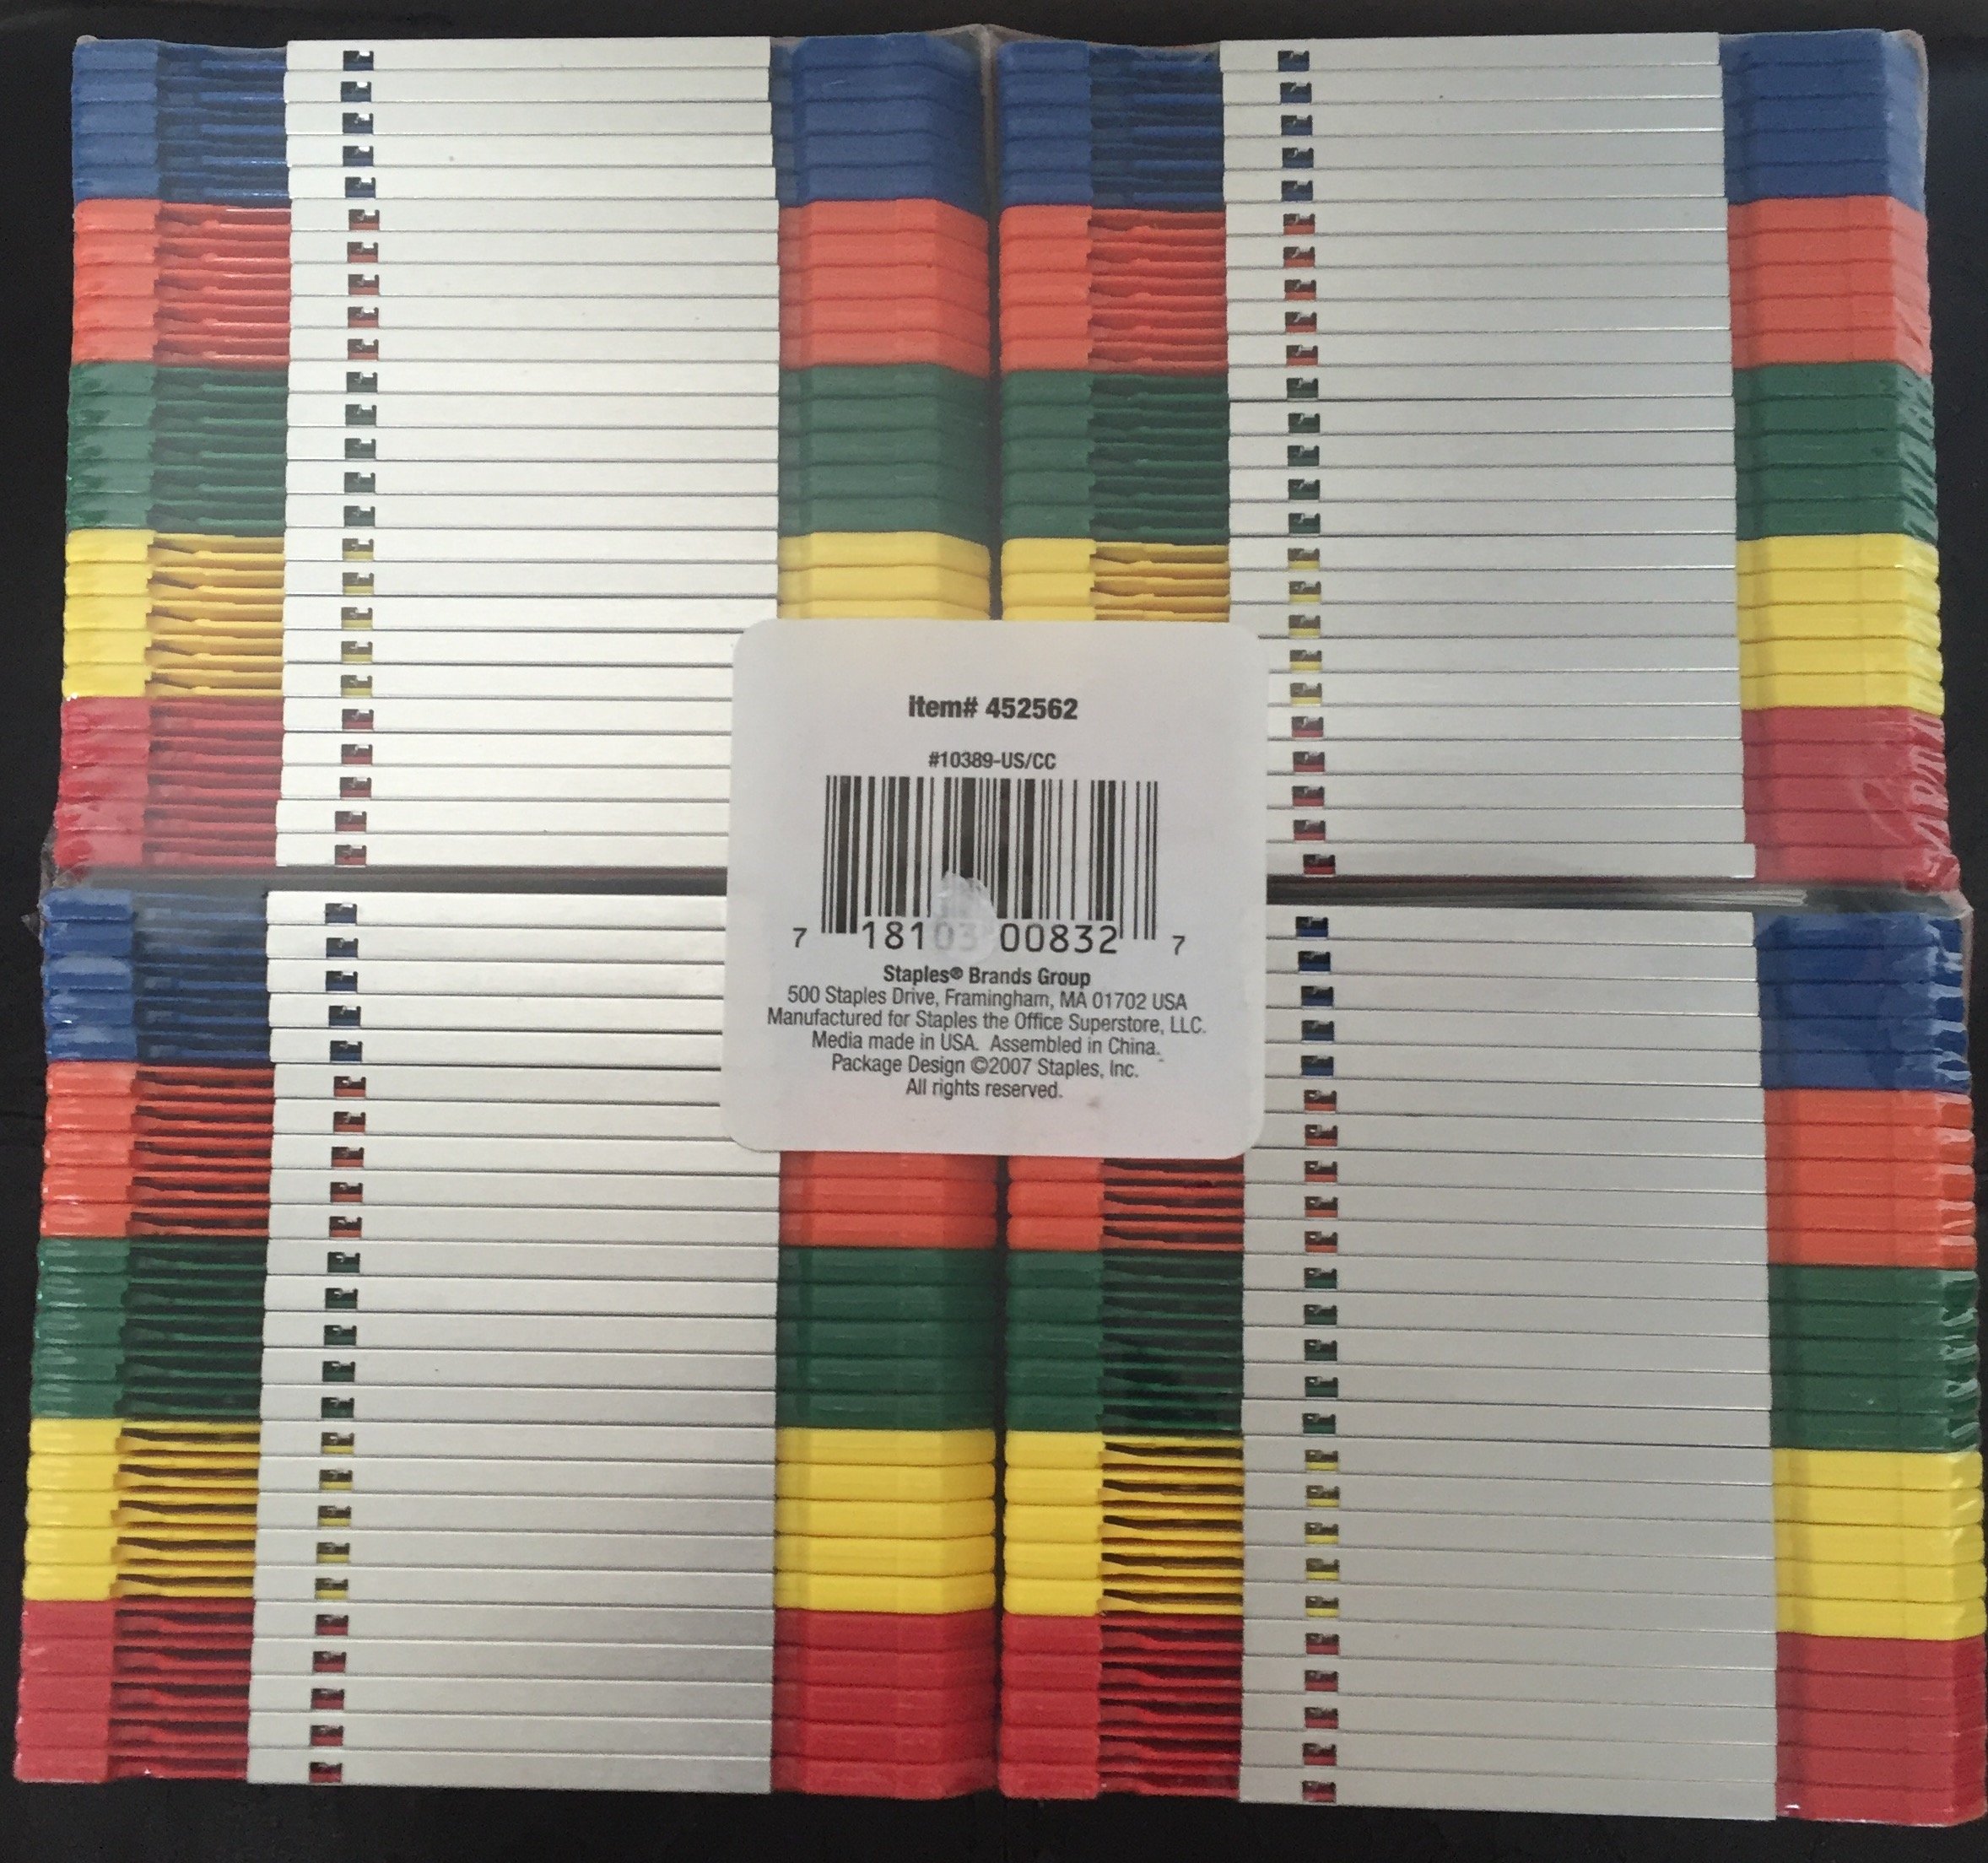 STAPLES 100 Pack Brand Floppy Disks (Diskettes)